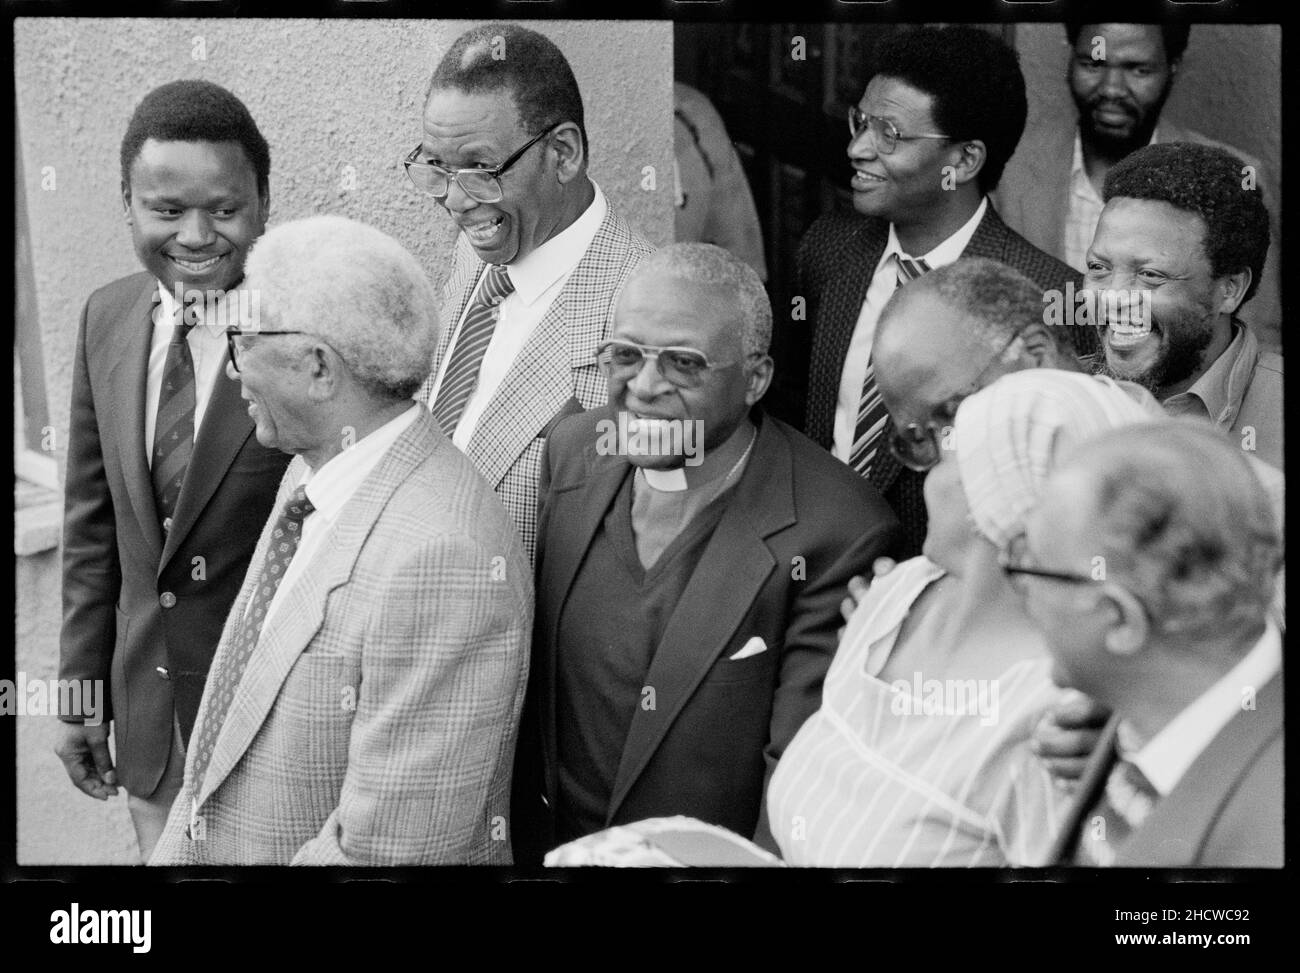 Il 15 ottobre 1989 Ahmed Kathrada, insieme a Jeff Masemola, Raymond Mhlaba, Billy Nair, Wilton Mkwayi, Andrew Mlangeni, Elias Motsoaledi, Oscar Mpetha e Walter Sisulu furono liberati dalla prigione di Johannesburg. Il ritorno a Bettina e a casa di Walter Sisulu a Soweto, Desmond Tutu partecipò. La Capzione locale Ahmed Mohammed Kathrada (o 'Kathy' come è popolarmente conosciuto) è nato in 1929 agli immigranti indiani in una città rurale in Sudafrica Foto Stock